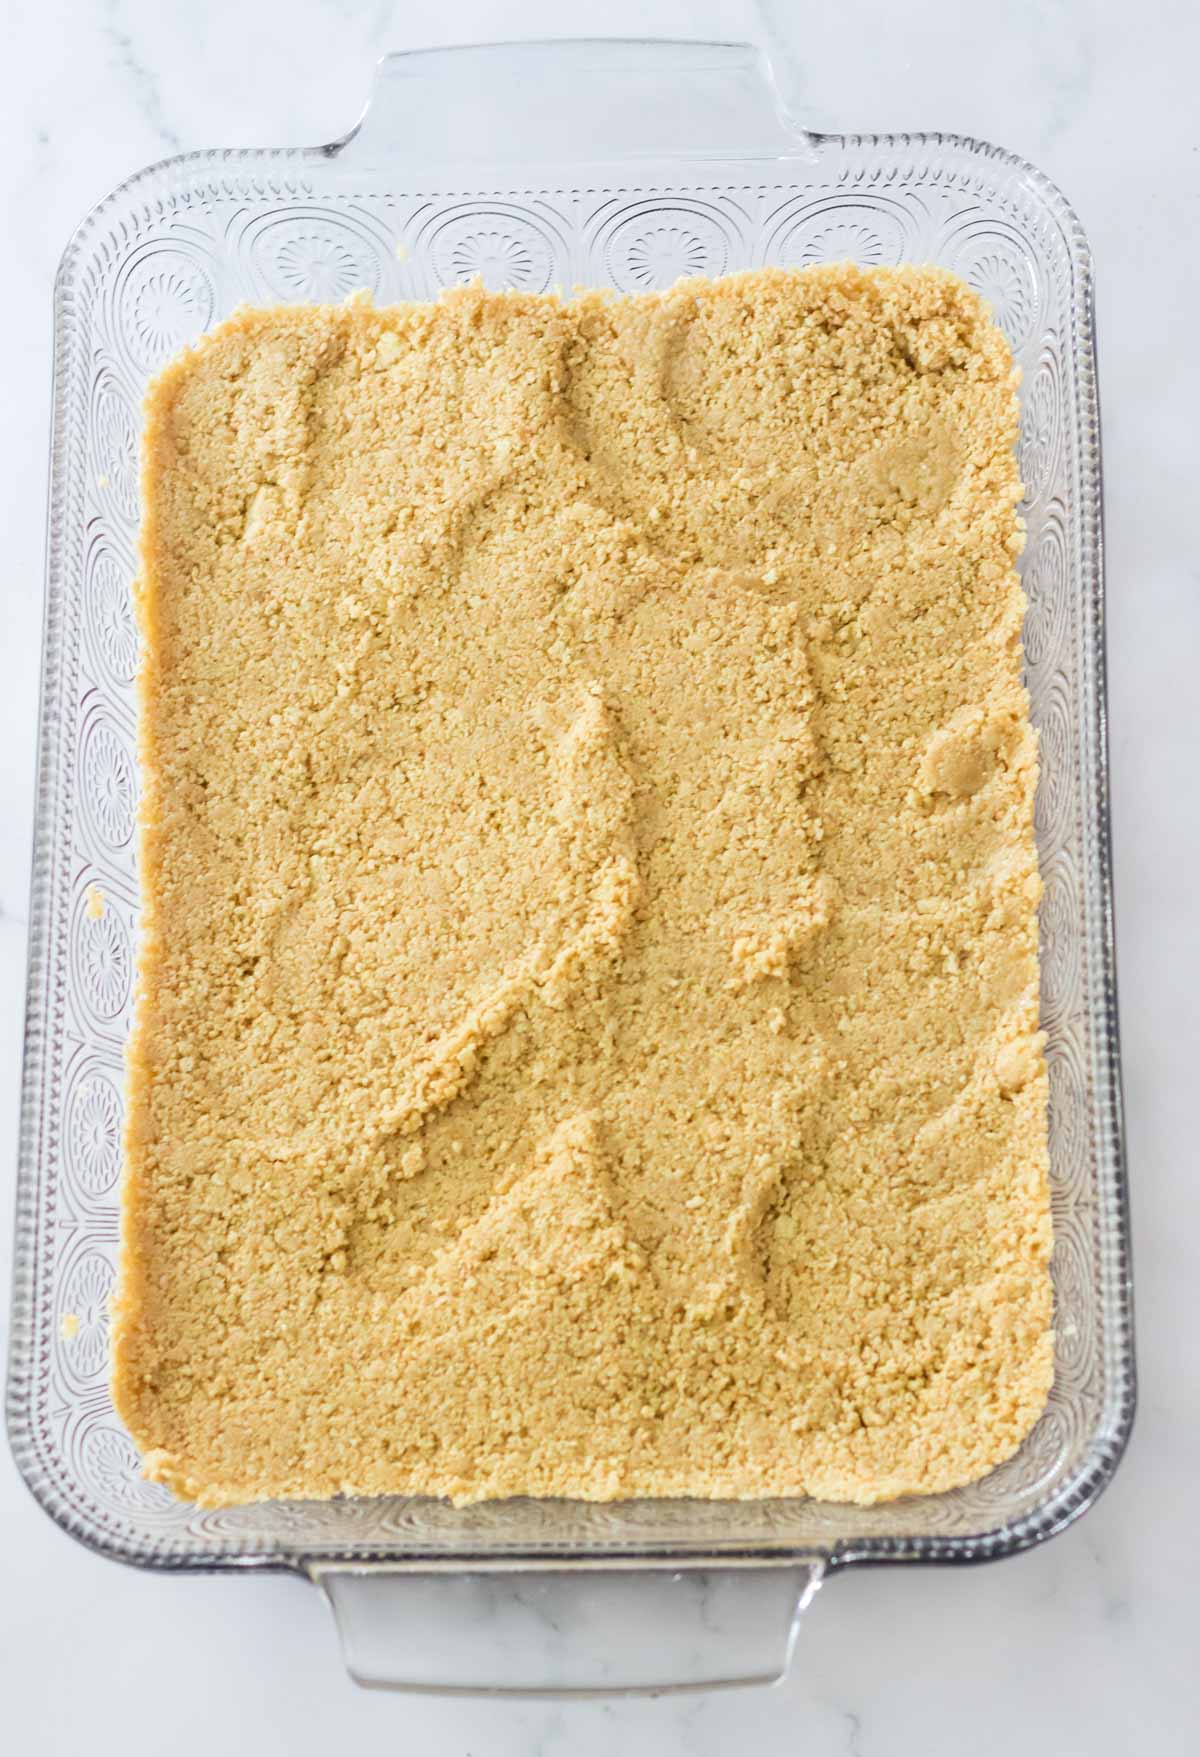 graham cracker crust in bottom of glass pan